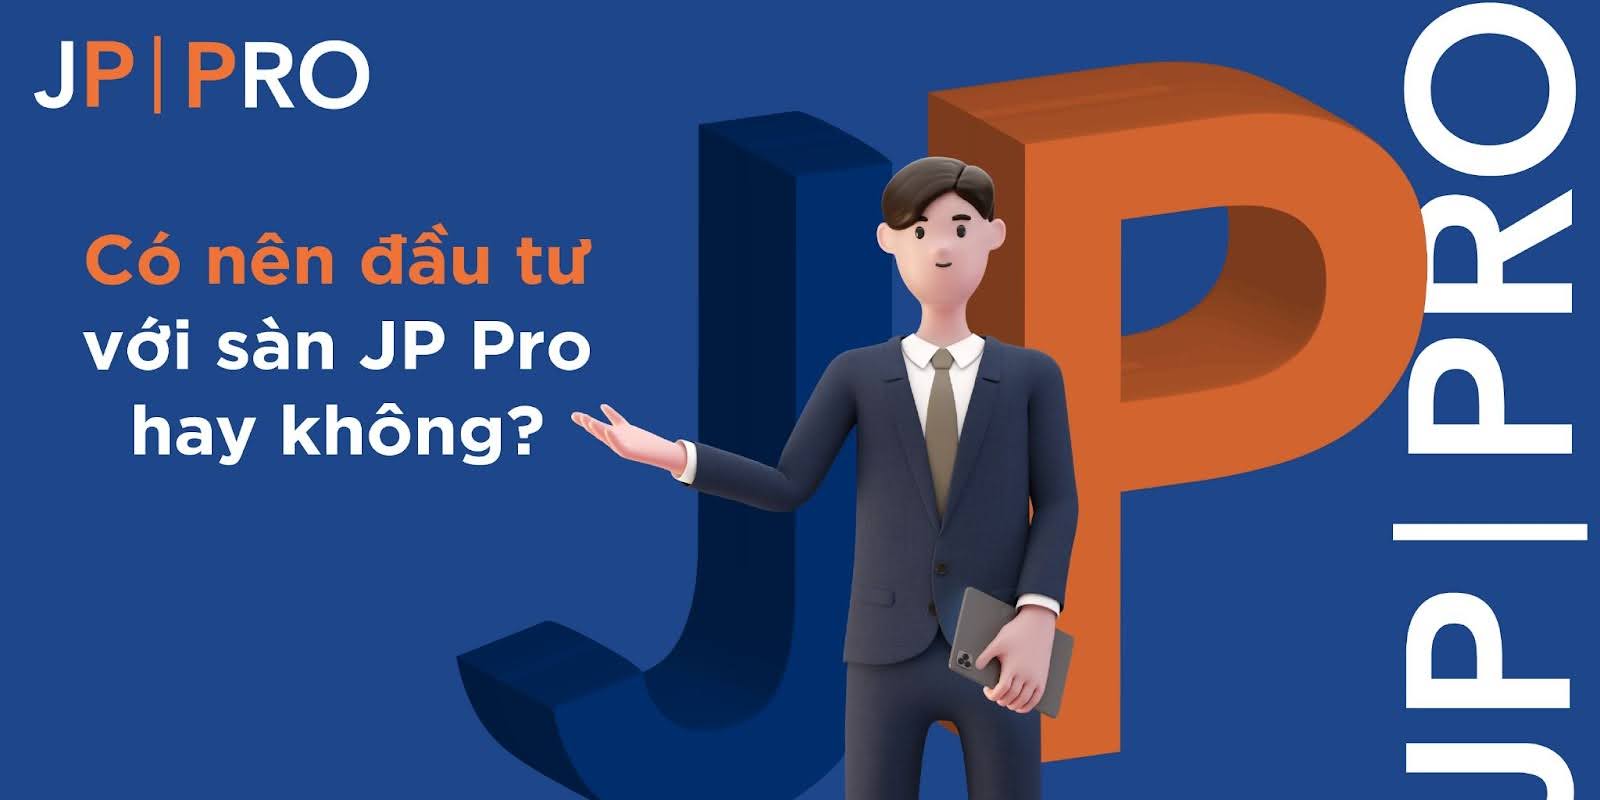 JP Pro - Lựa chọn hàng đầu của nhà đầu tư